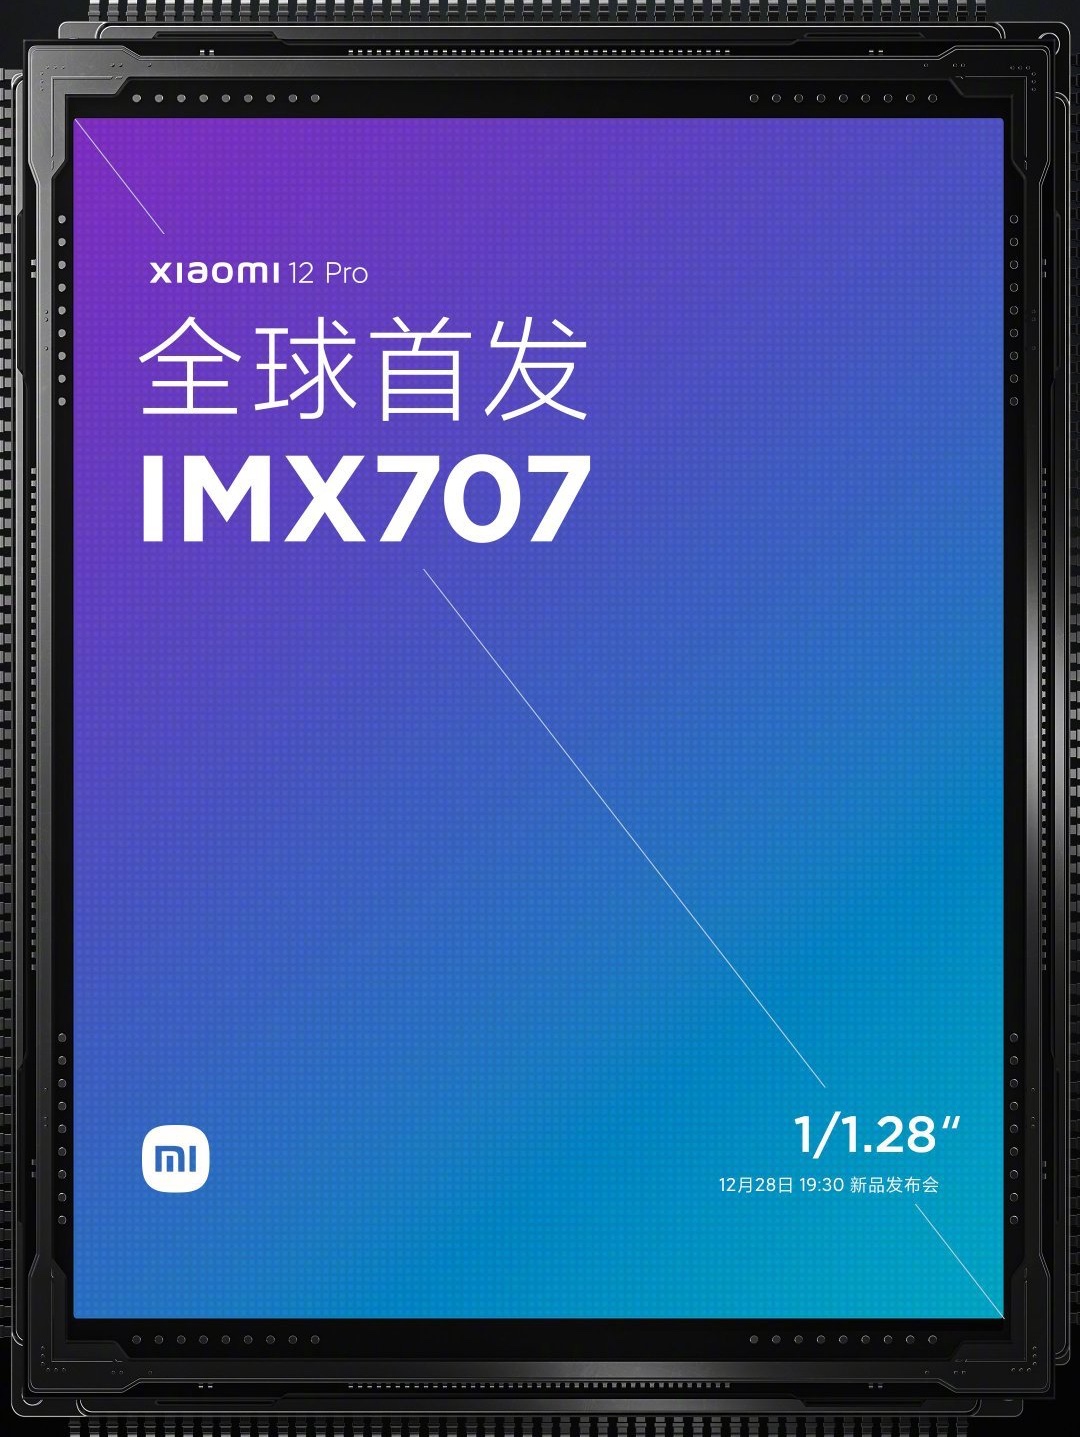 Sony IMX707